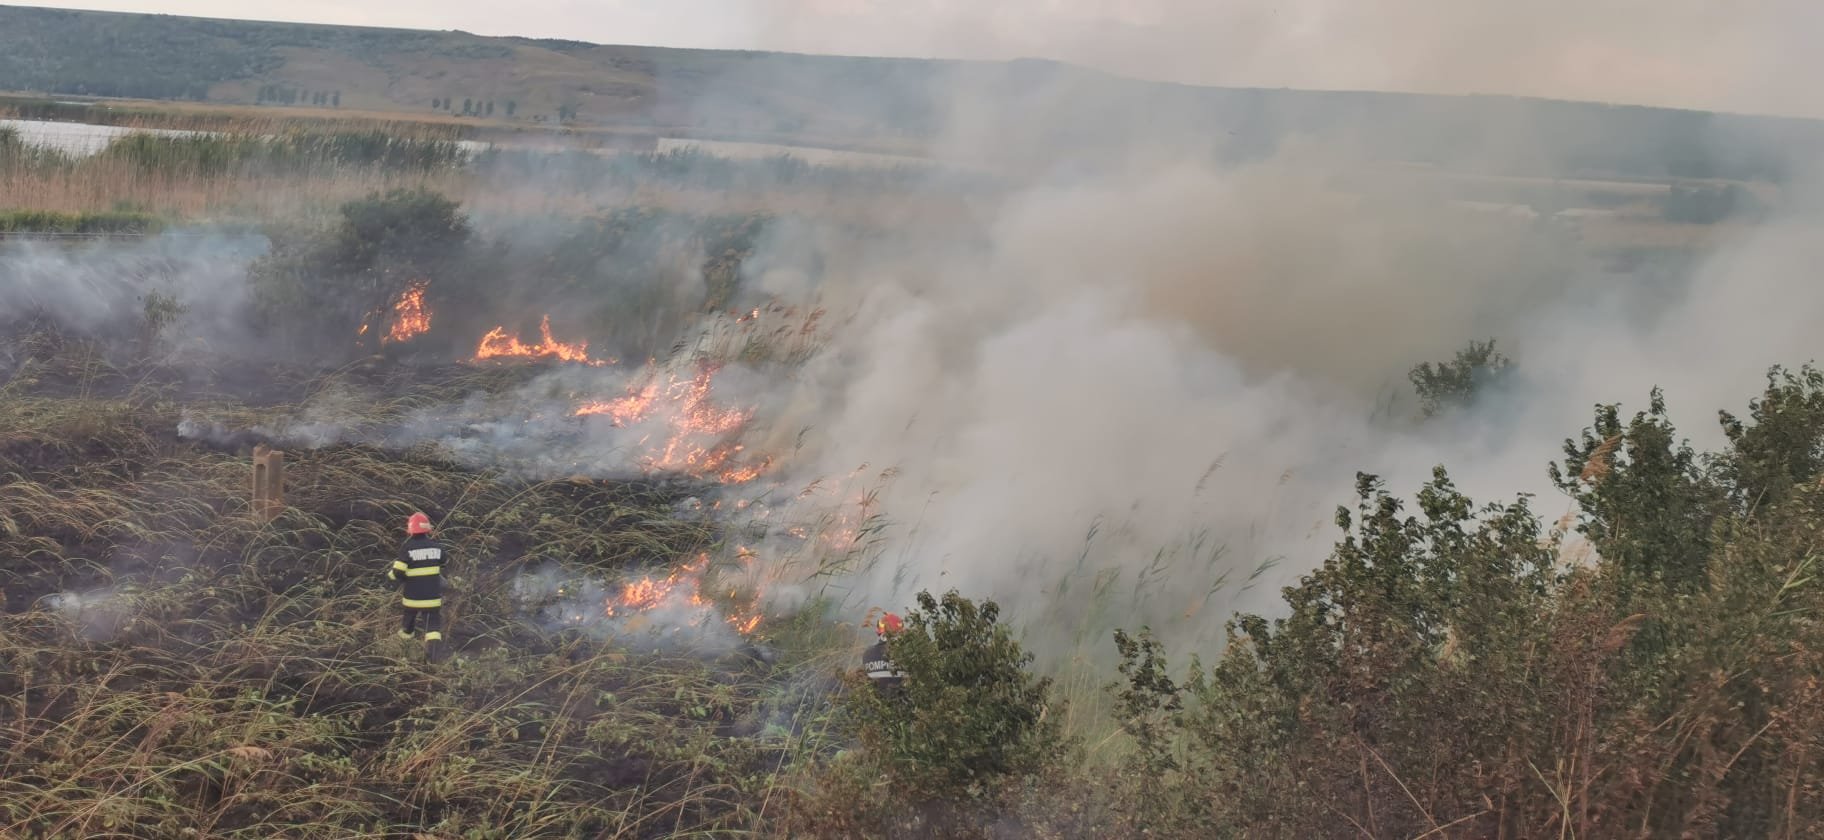  Incendiu pe o suprafaţă de 20 de hectare de teren în localitatea Larga Jijia (FOTO)